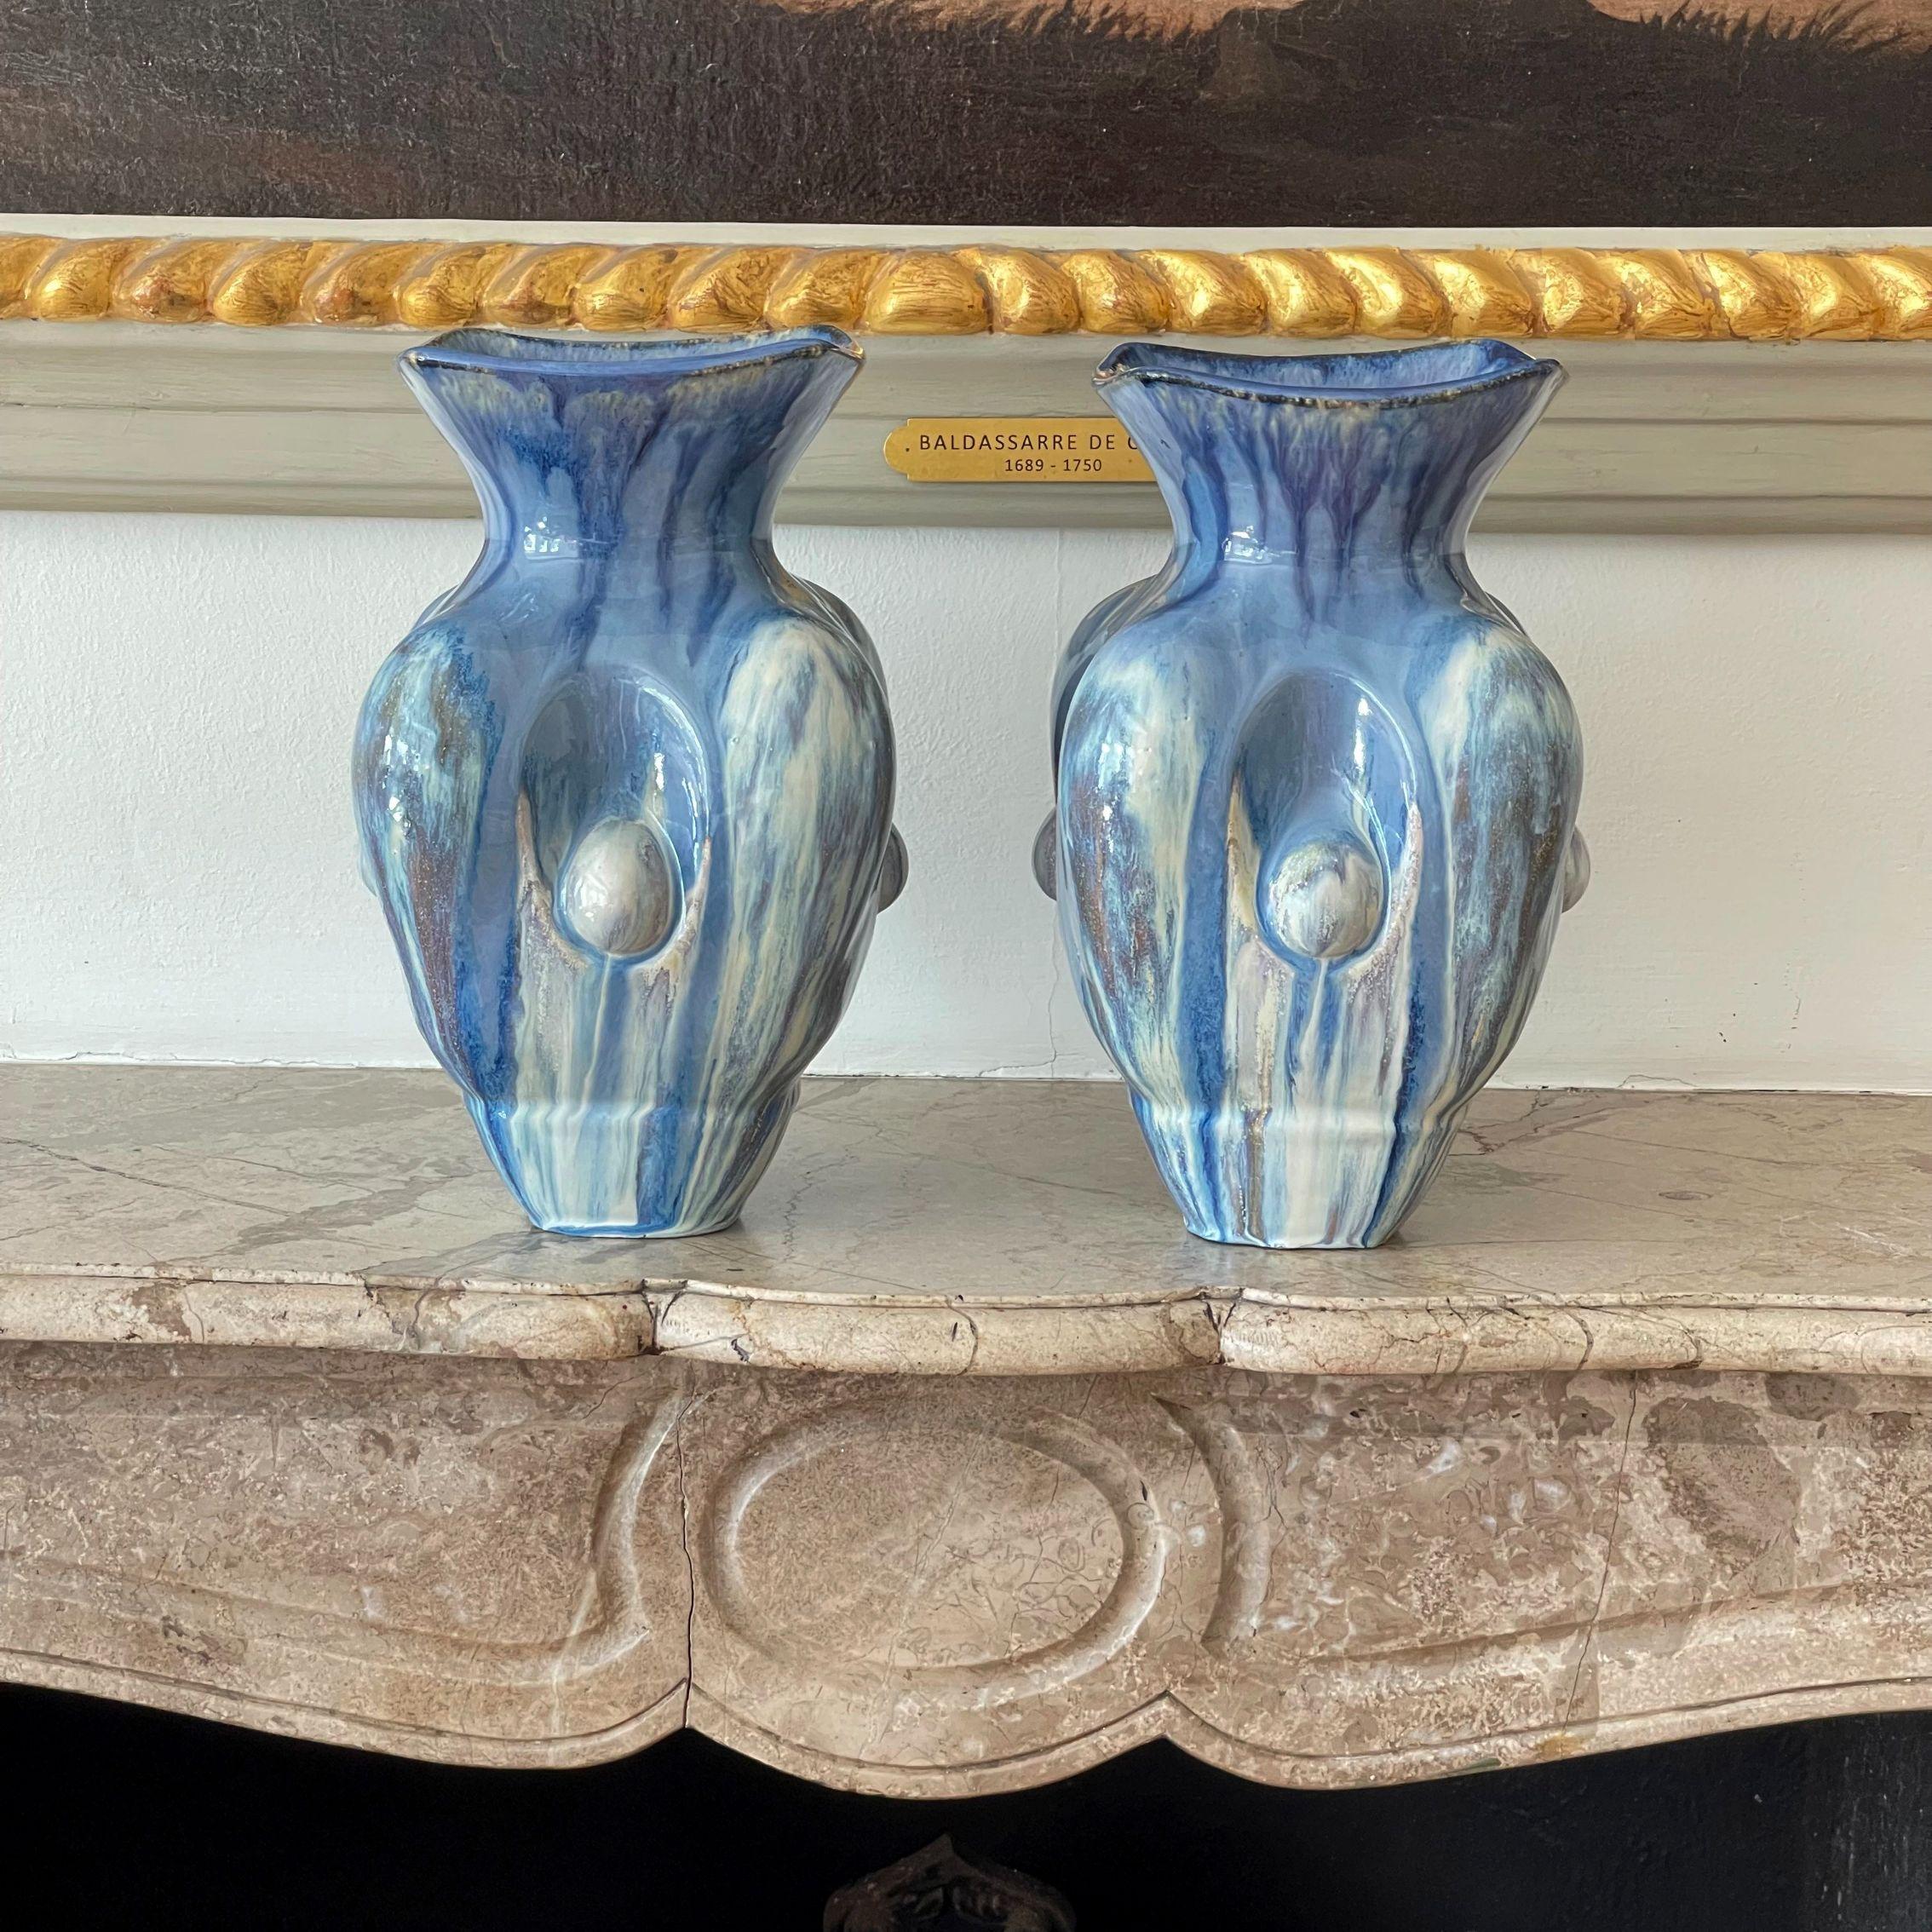 Violante Lodolo D'Oria, Paar himmelblaue quadratische Vasen mit Nischen, 2022, glasiertes Steinzeug, mehrfach glasiert, Maße B 17cm x H 28cm.

Neue beeindruckende Werke der Keramikkünstlerin Violante Lodolo d' Oria. Durch die Schichtung